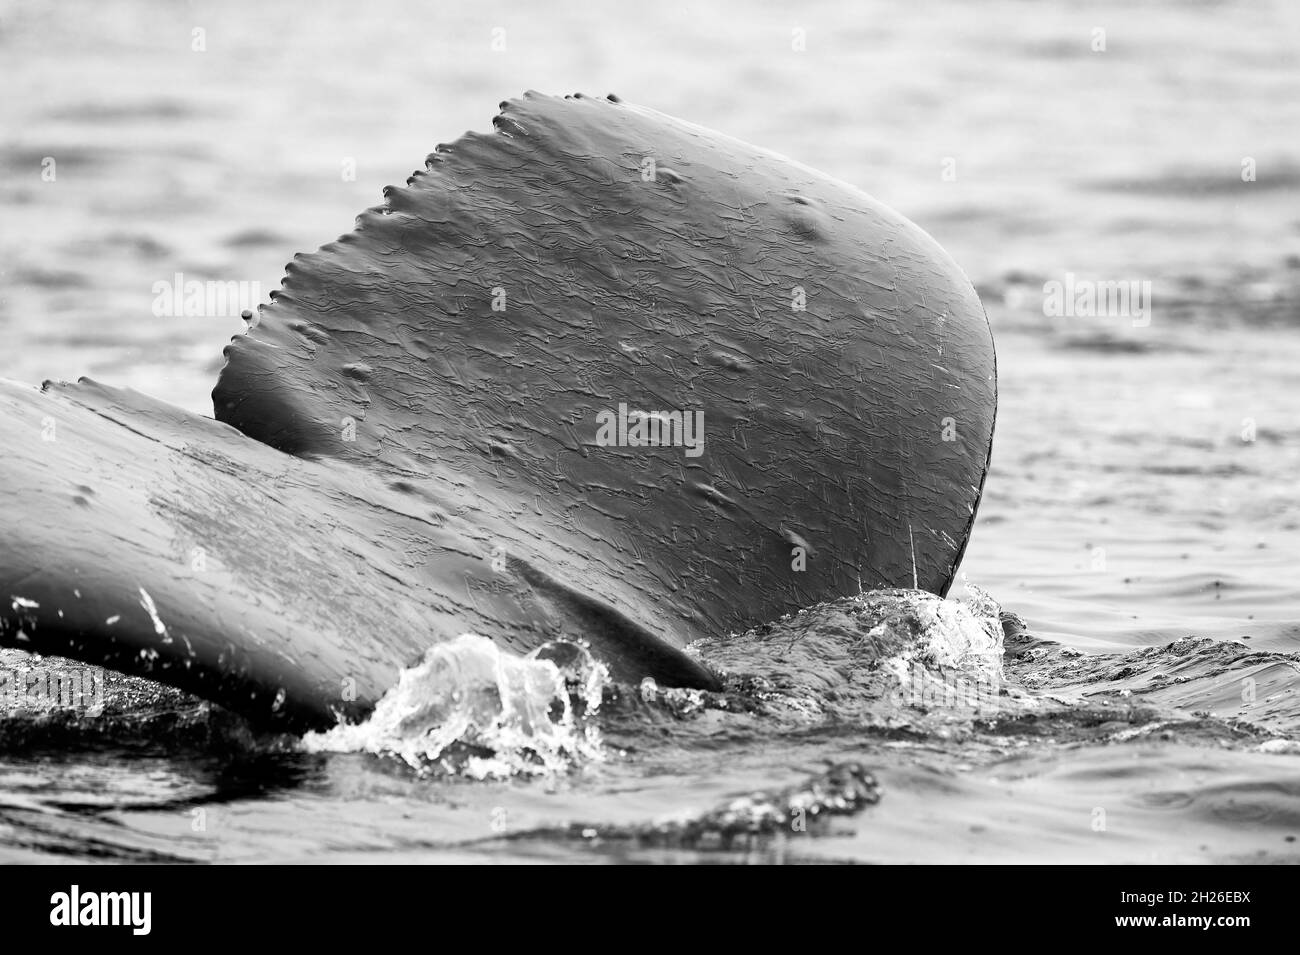 Baleine à bosse nageant dans l'eau, Nord de l'île de Vancouver, C.-B. Canada Banque D'Images